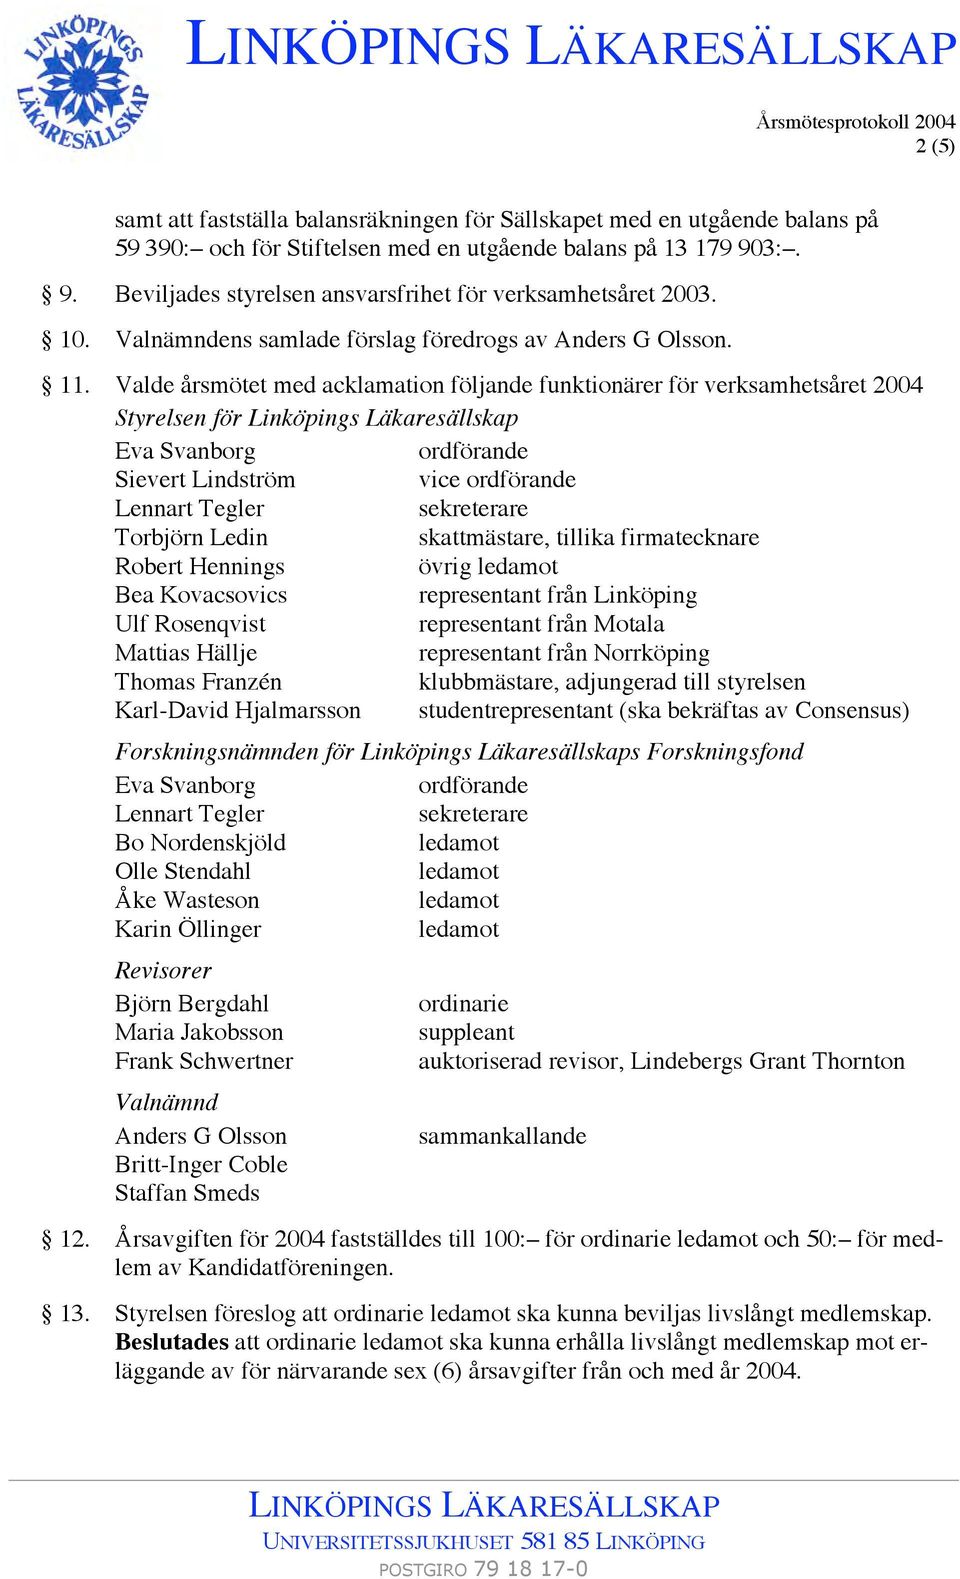 Valde årsmötet med acklamation följande funktionärer för verksamhetsåret 2004 Styrelsen för Linköpings Läkaresällskap Eva Svanborg ordförande Sievert Lindström vice ordförande Lennart Tegler